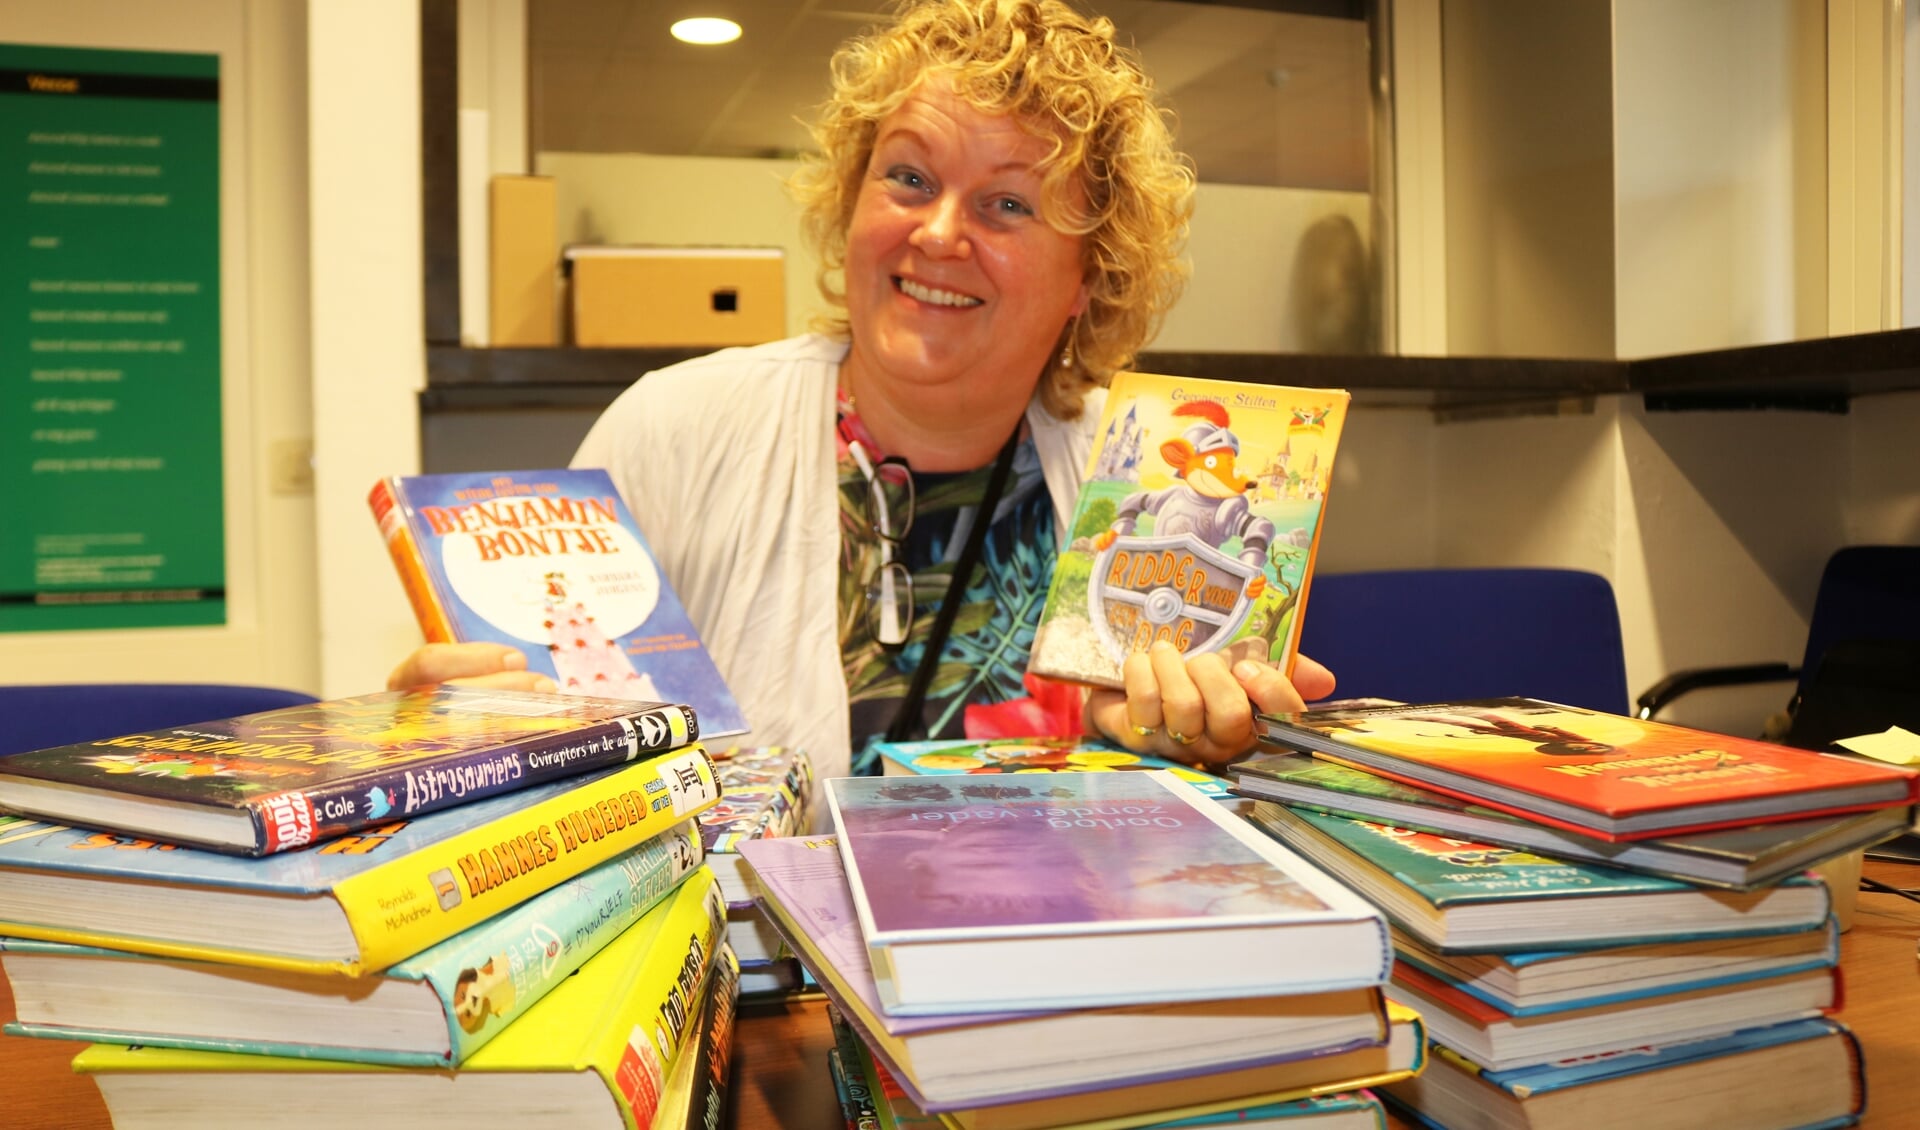 Hanny Polling is bij de kinderboeken in haar element. Foto: Arjen Dieperink